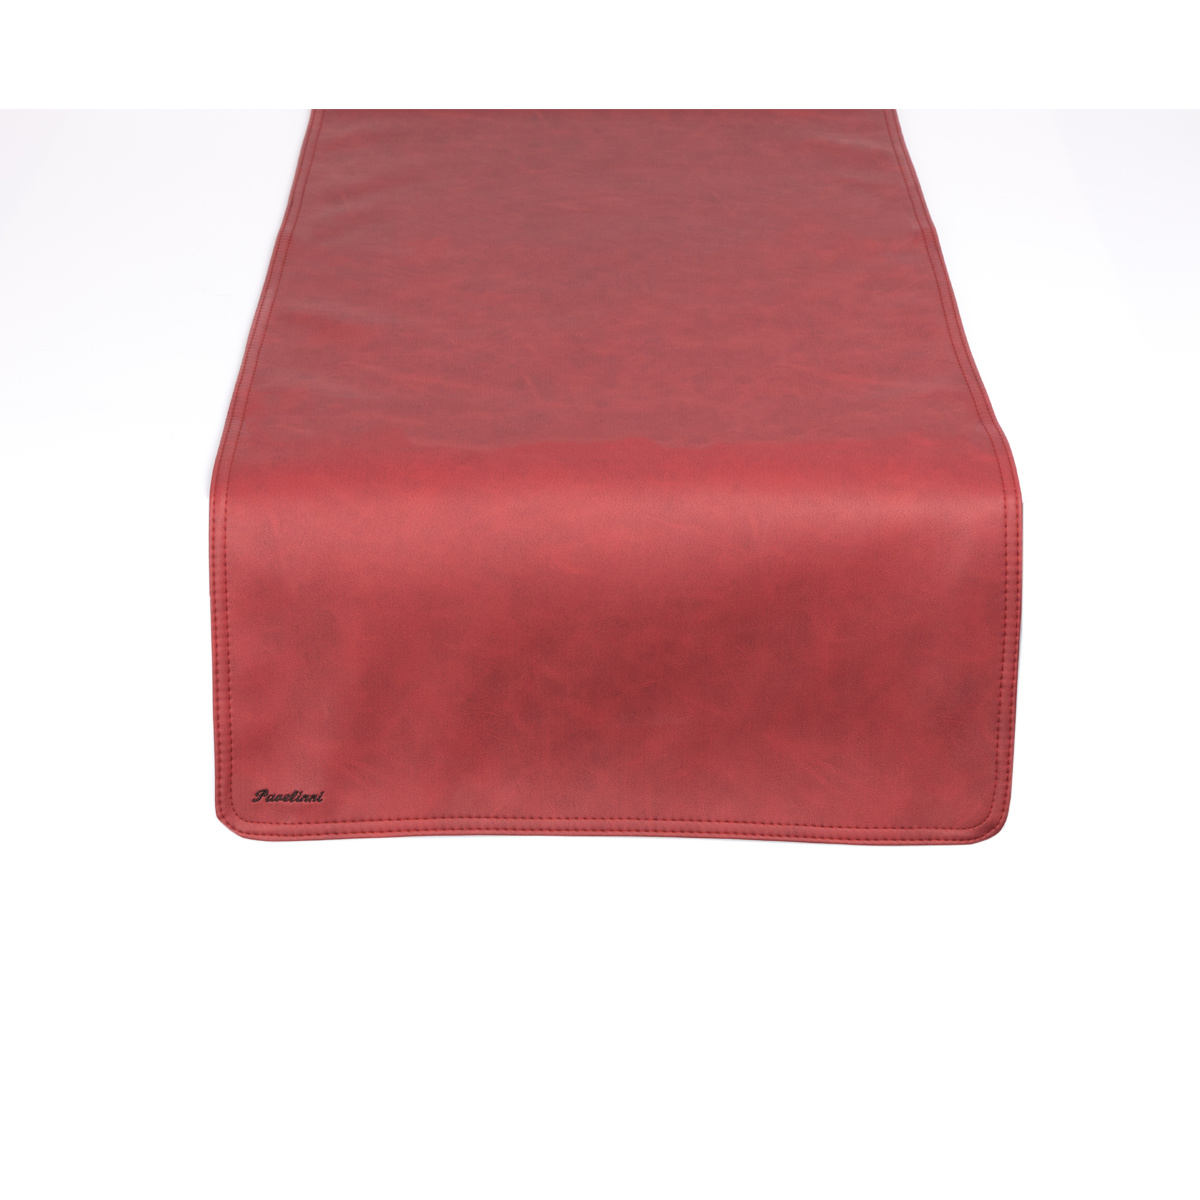 Leder Tischläufer | Vintage Equator | Einseitig | 450x1200mm | Erhältlich in 8 Farben